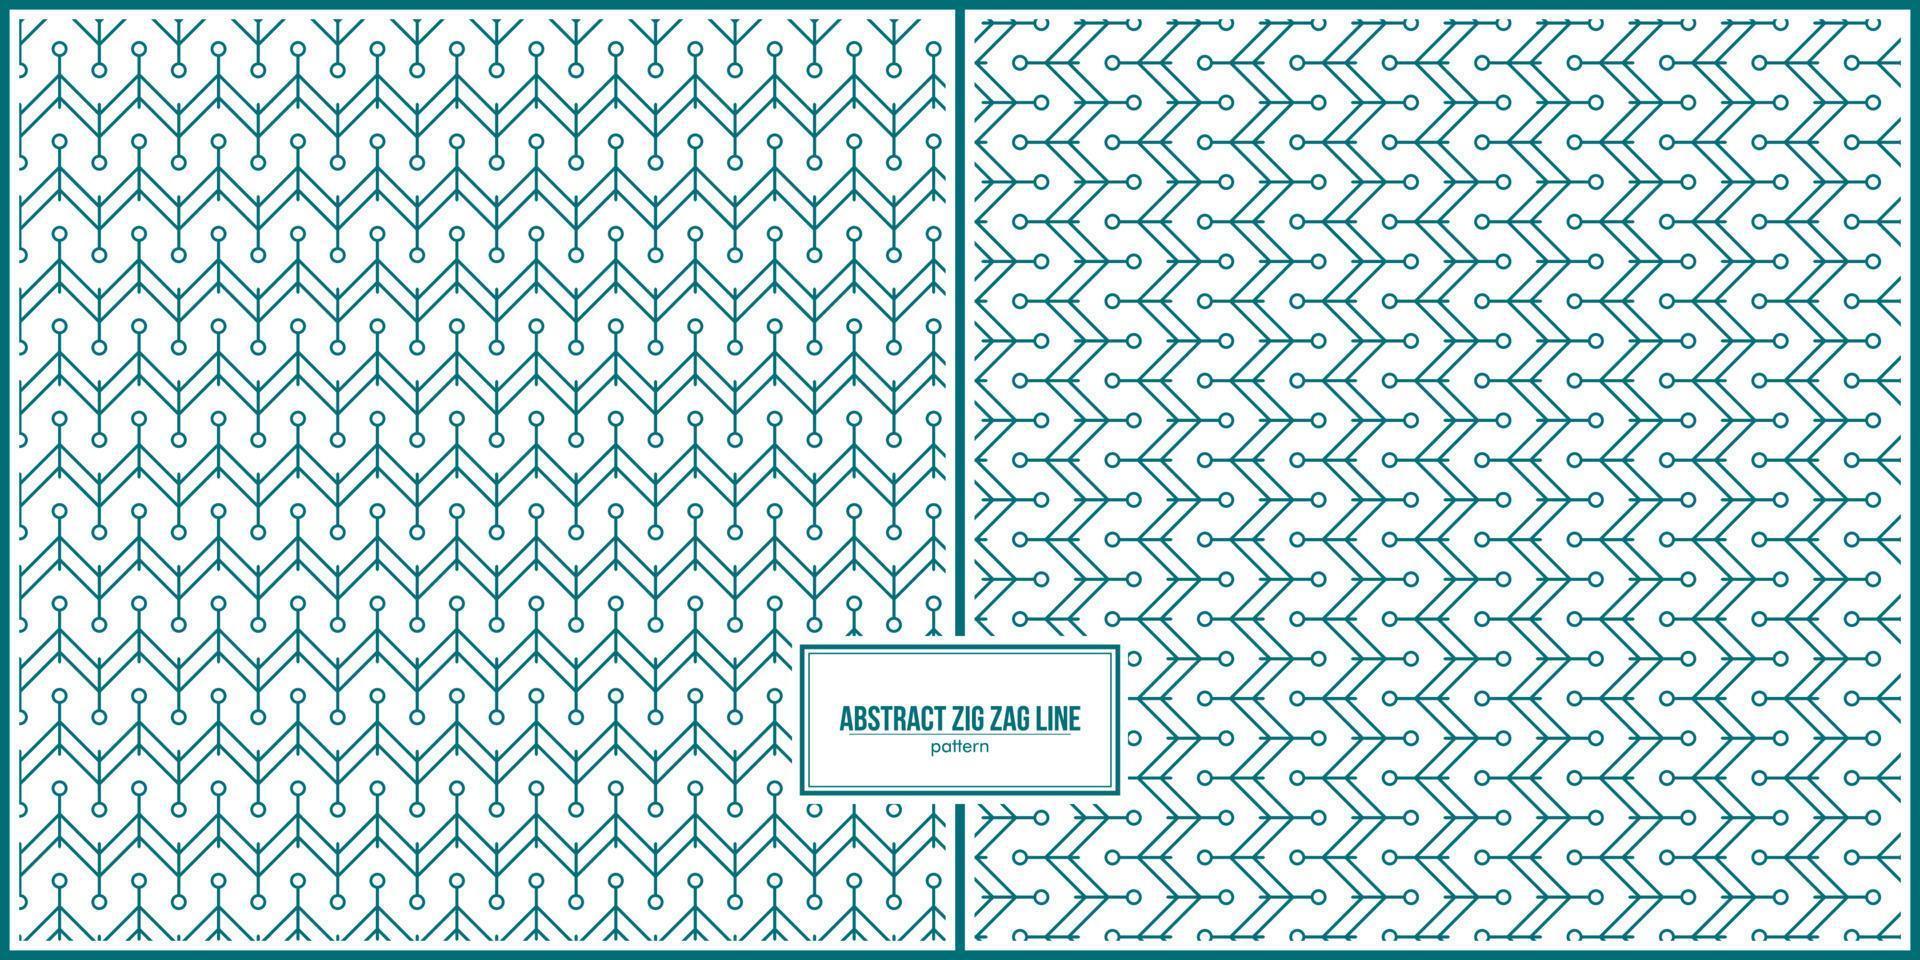 patrón abstracto de líneas verticales y horizontales en zig-zag vector